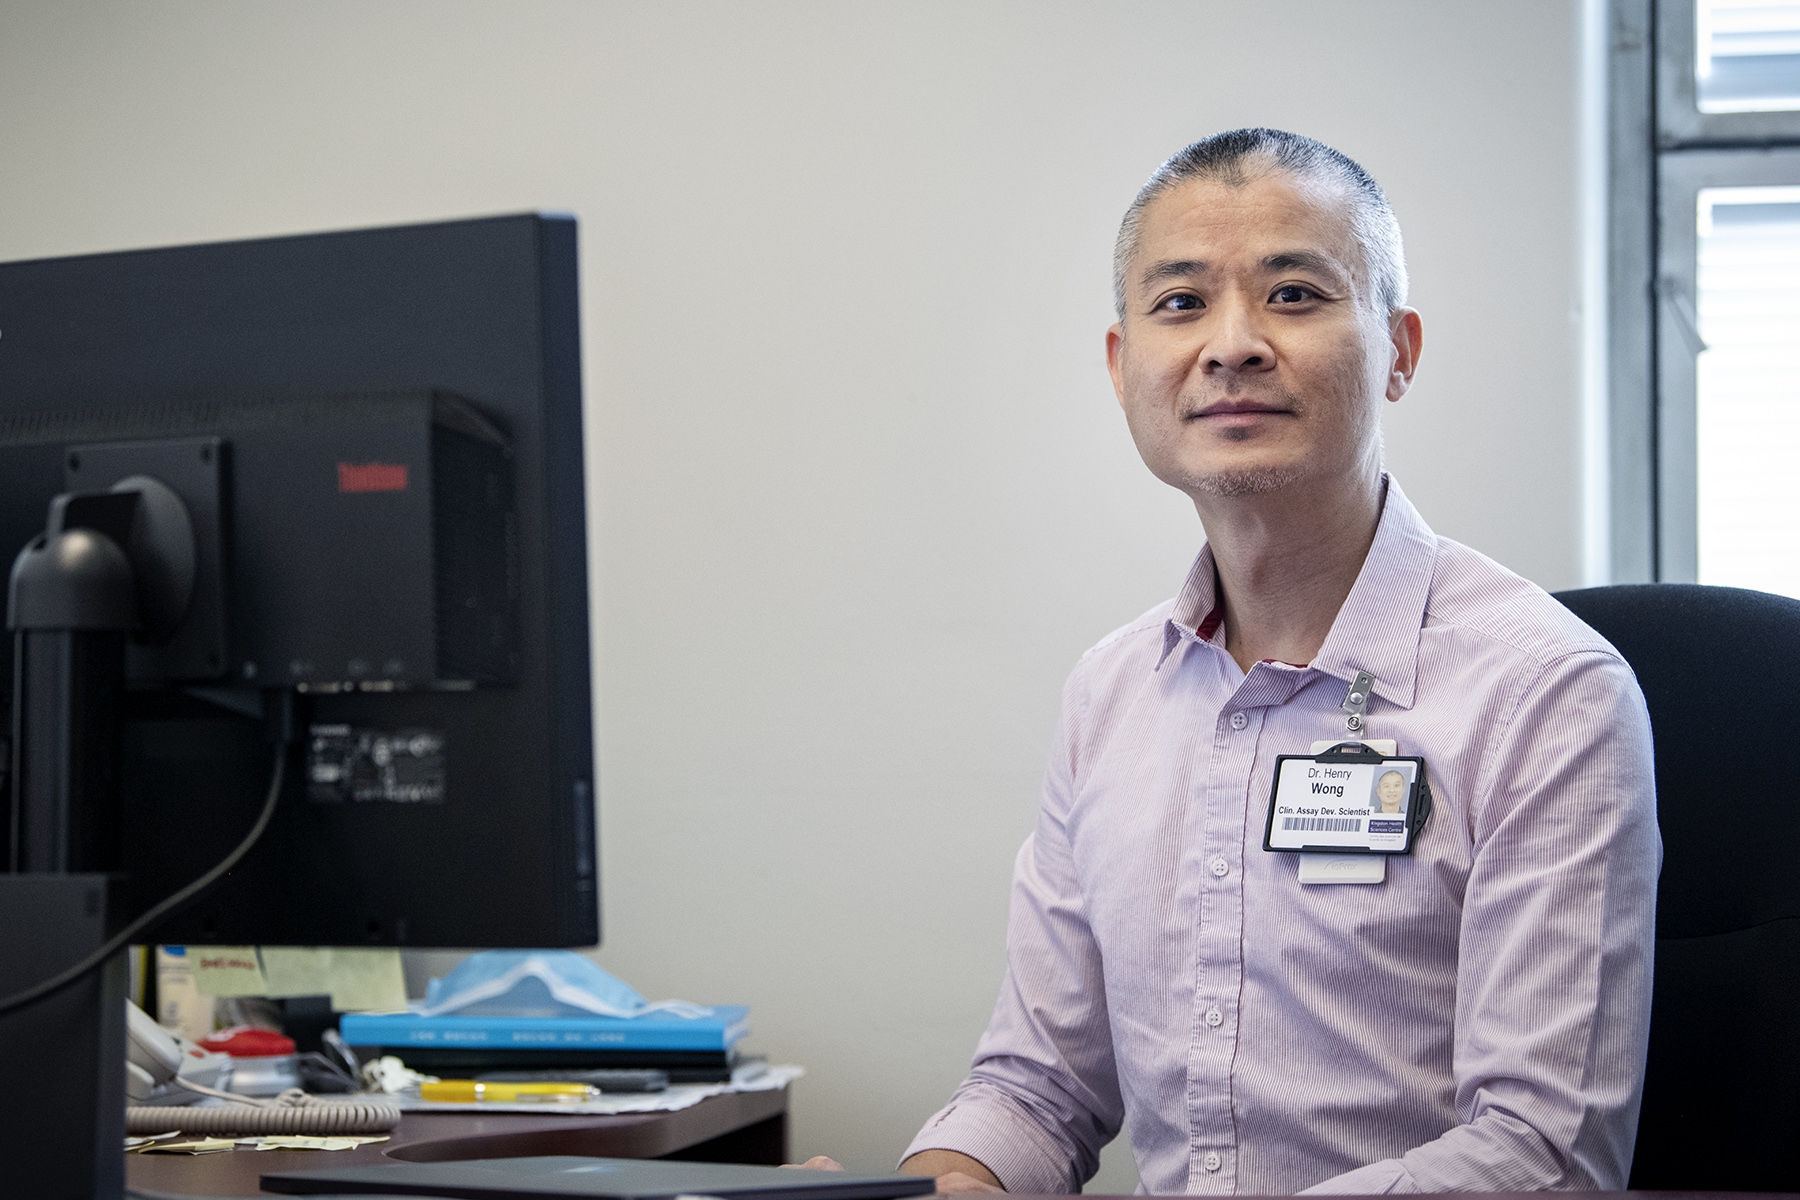 Dr. Henry Wong, Clinical Assay Development Scientist